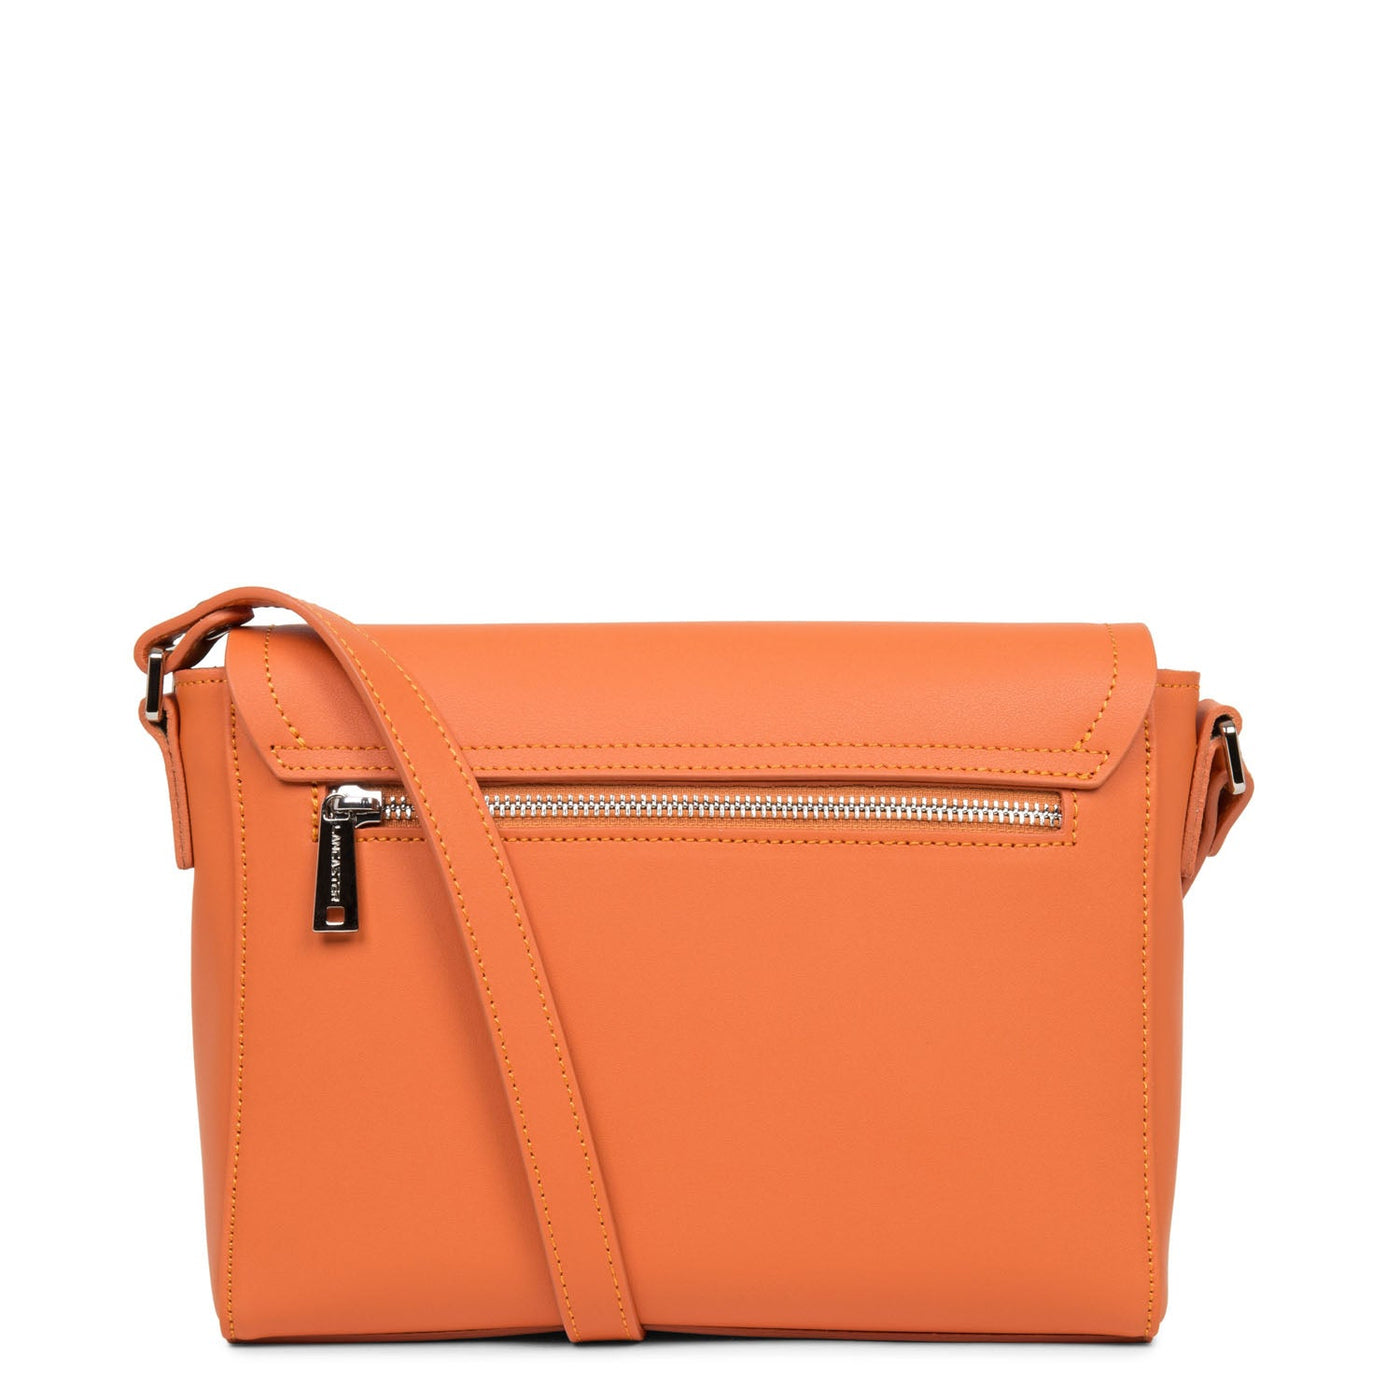 m crossbody bag - city maé #couleur_orange